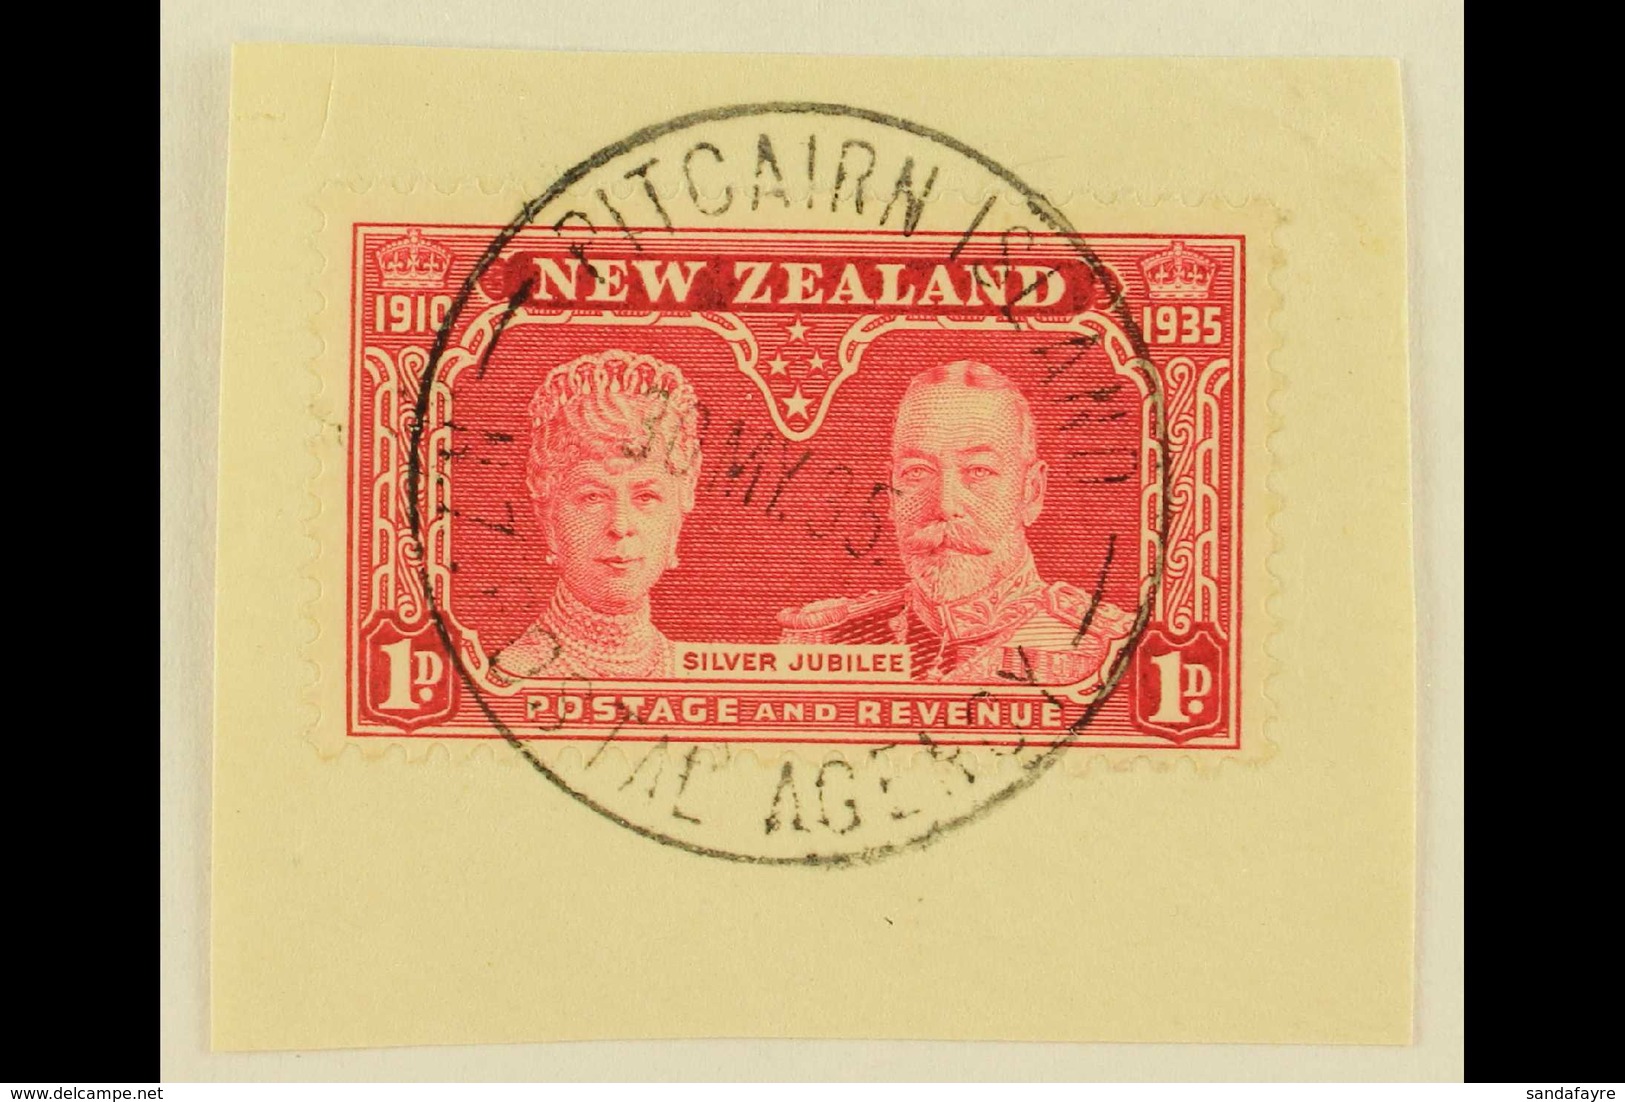 1935 1d Carmine Silver Jubilee Of New Zealand, On Piece Tied By Fine Full "PITCAIRN ISLANDS" Cds Cancel Of 30 MY 35, SG  - Islas De Pitcairn